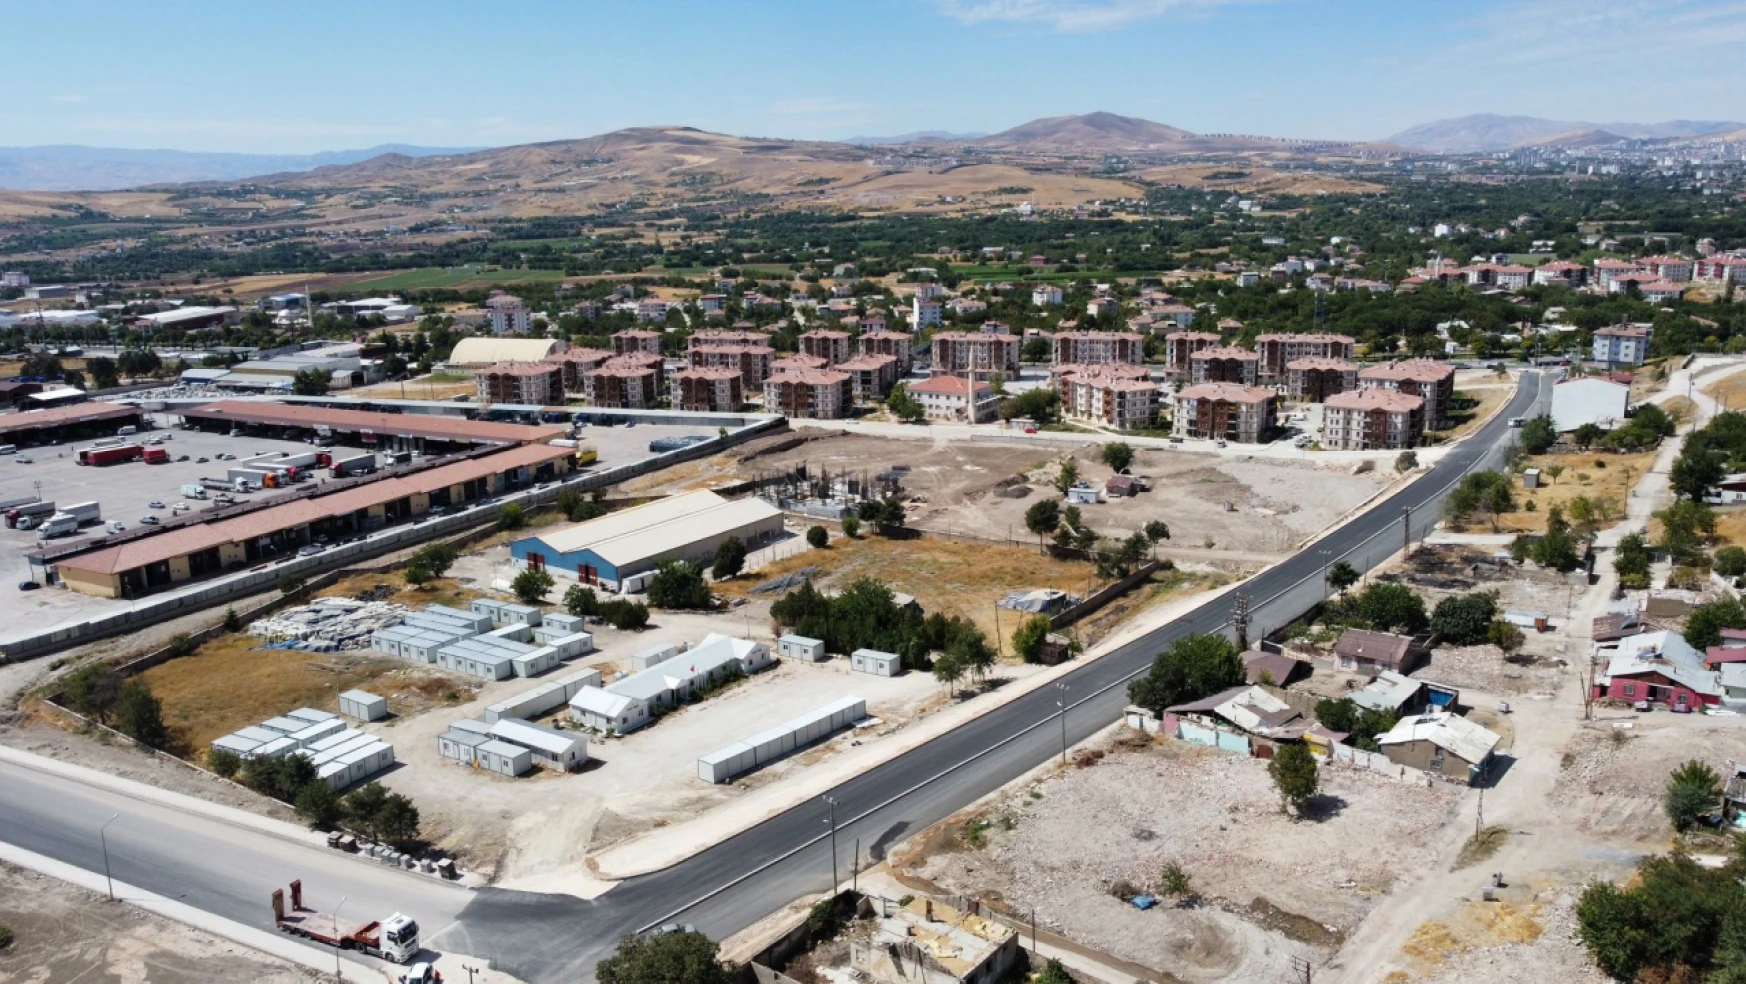 Elazığ belediyesi, Beyyurdu yoluna sıfır asfalt serimi gerçekleştirdi